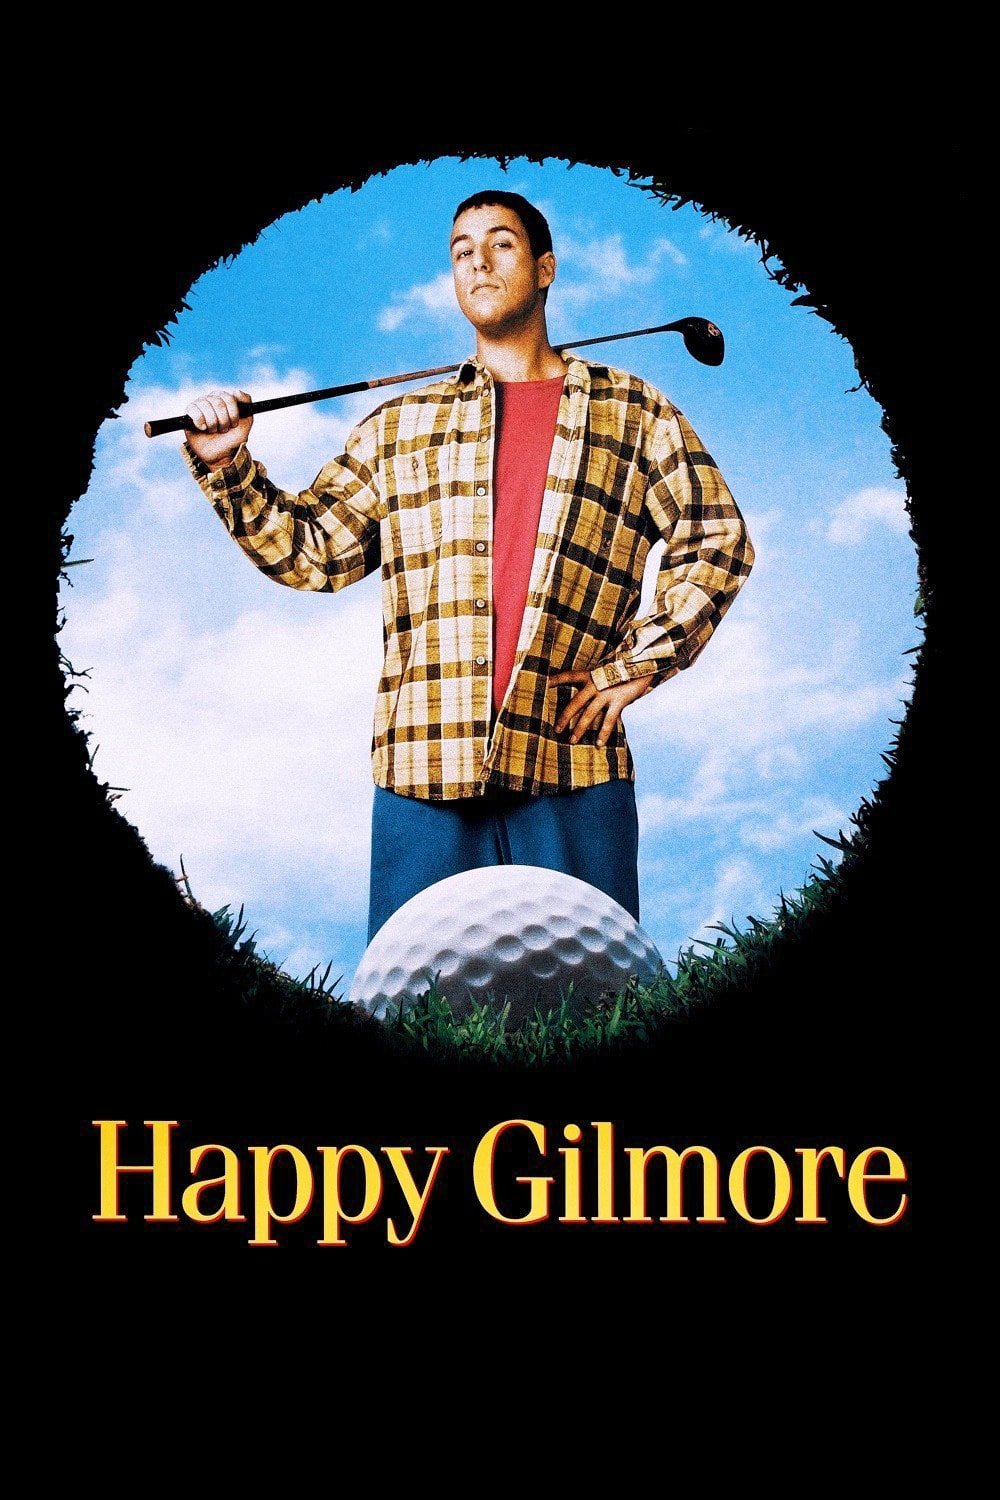 Happy Gilmore - Ein Champ zum Verlieben (1996)